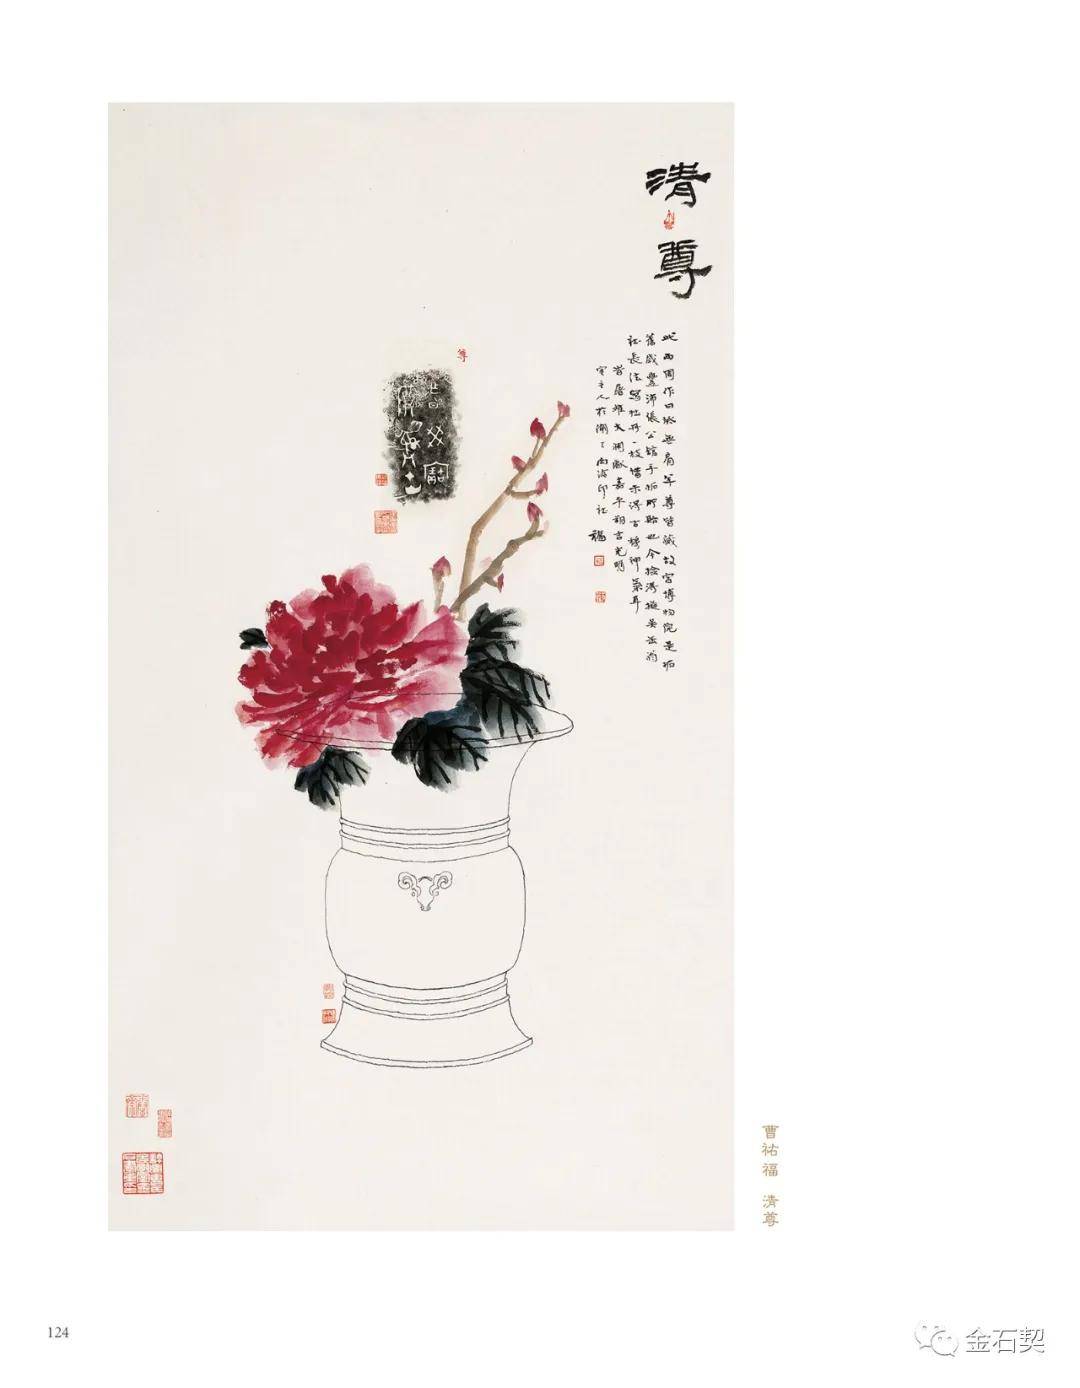 全国首部金石博古画专著《富贵寿考—中国金石博古画图说》出版